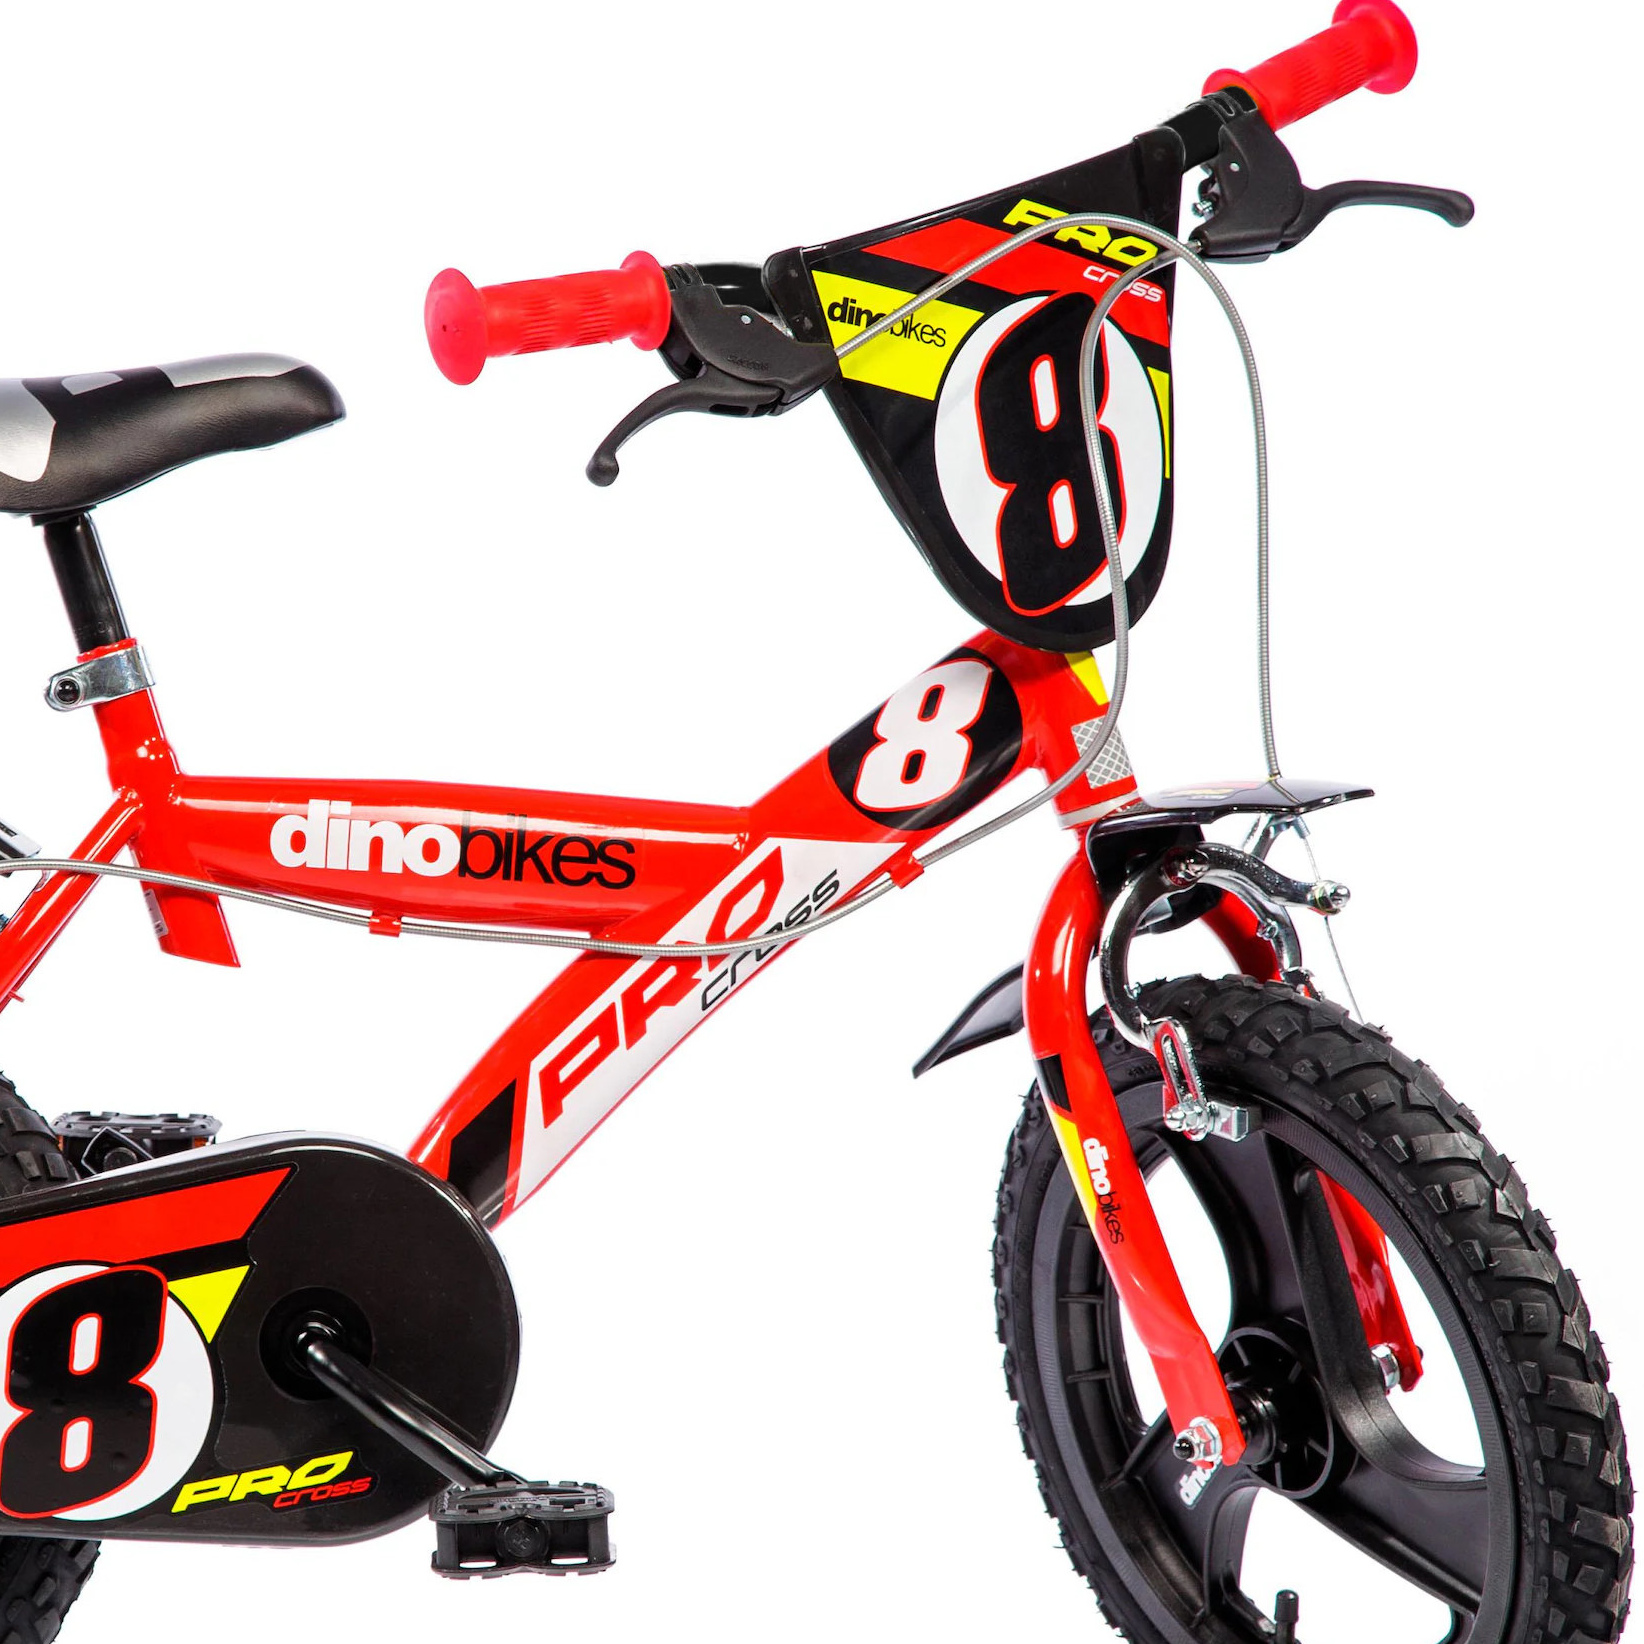 Bicicleta Criança Pro Cross 16 Polegadas 5-7 Anos